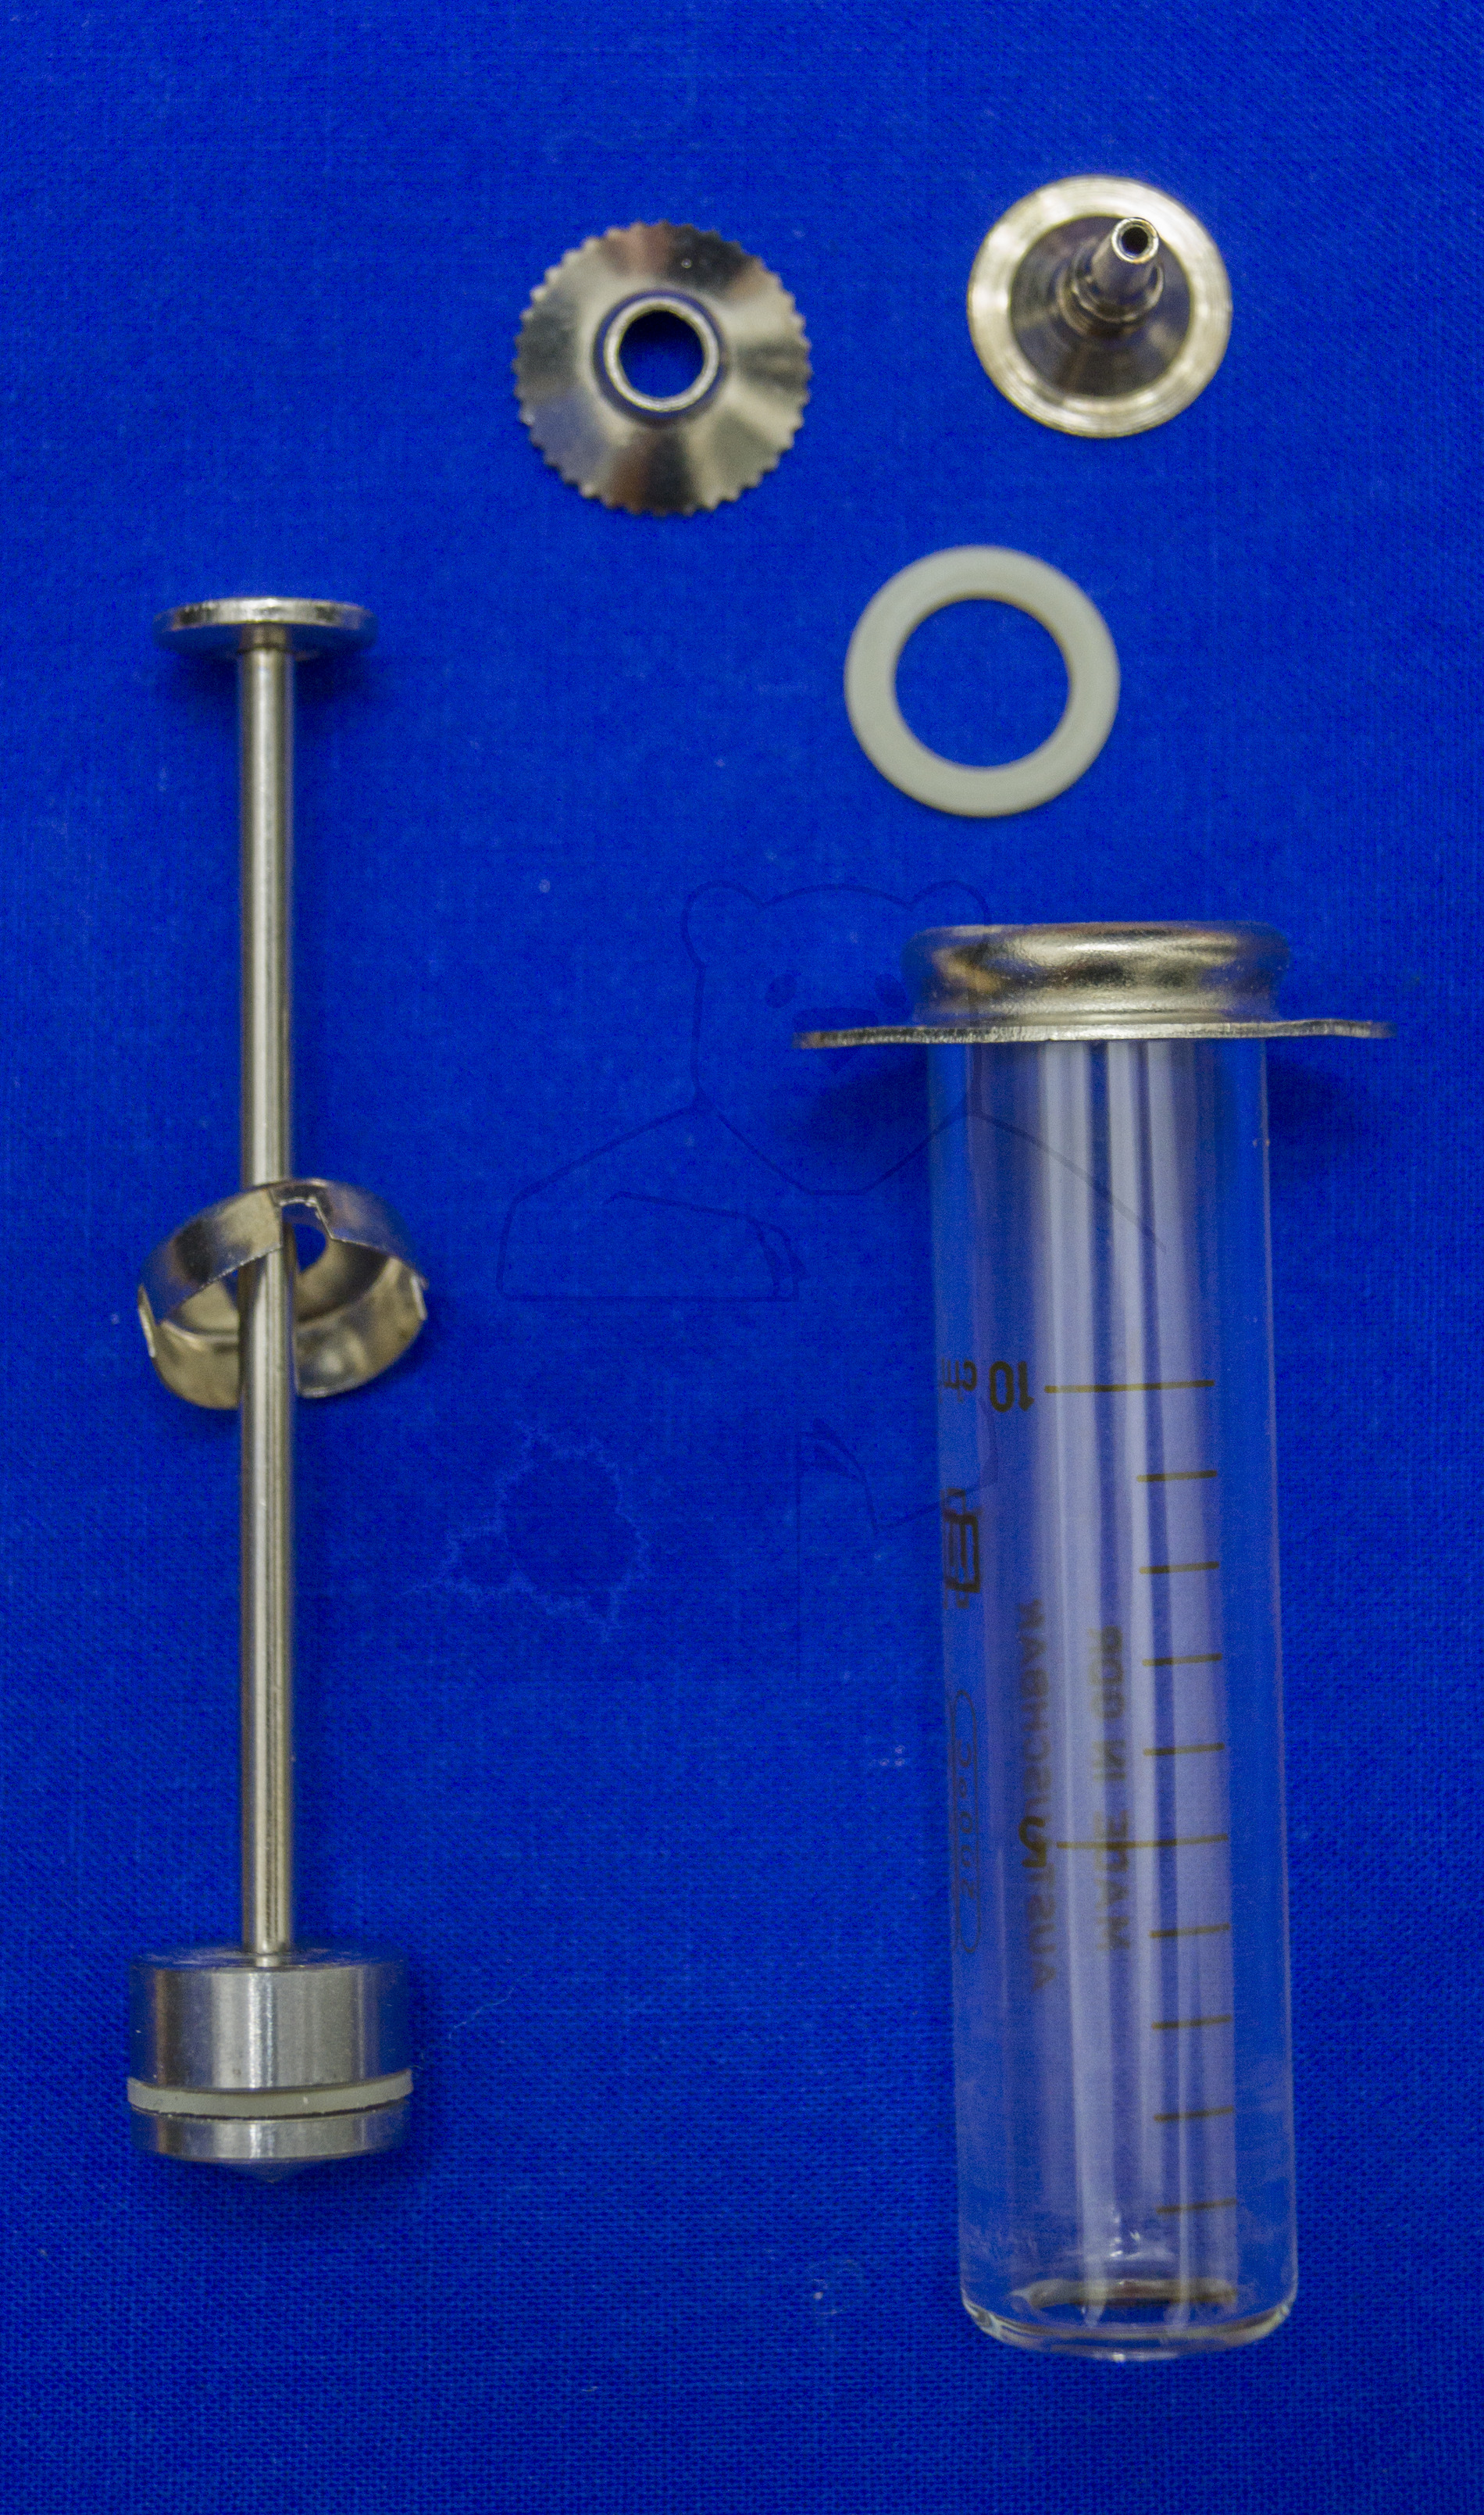 Spritzenbox Feldlazarett / Sanitäter, Anfang 1970'er Jahre, Demontierte 10ml Spritze mit Glaszylinder, Kolben/Stempel inkl. Silikondichtung, Verschraubbarer Ansatz mit Silikondichtung